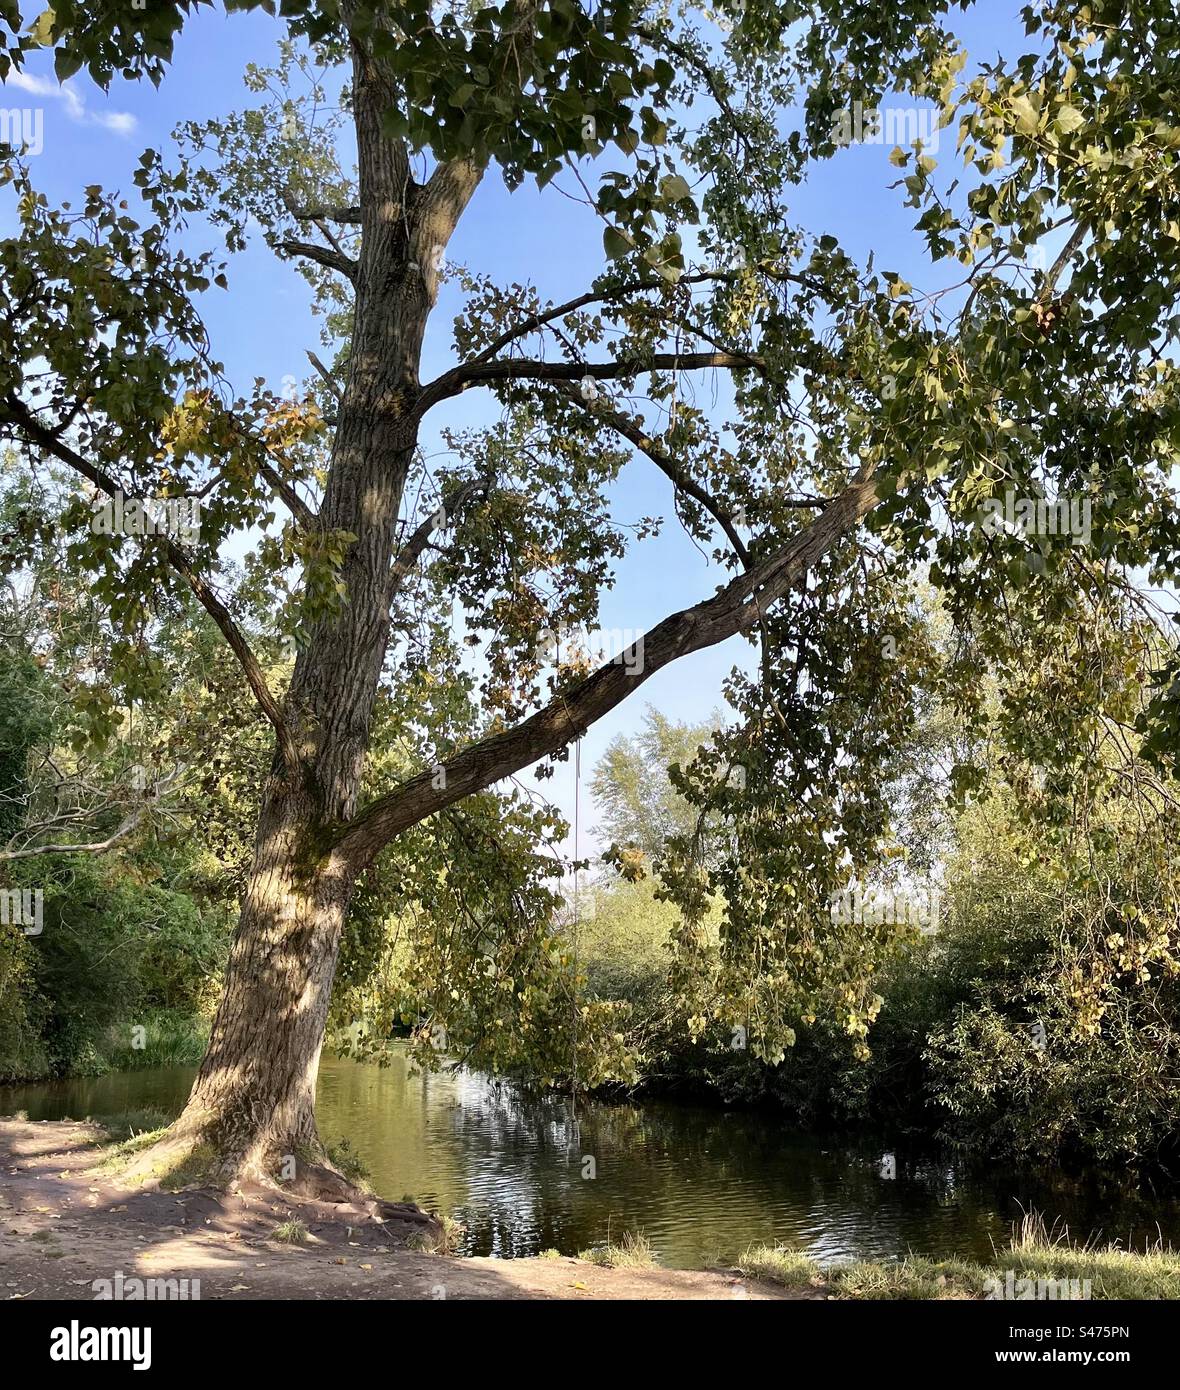 Eine Seilschaukel hängt in einem Baum, damit Spaßsuchende in den Fluss unten springen können. Stockfoto